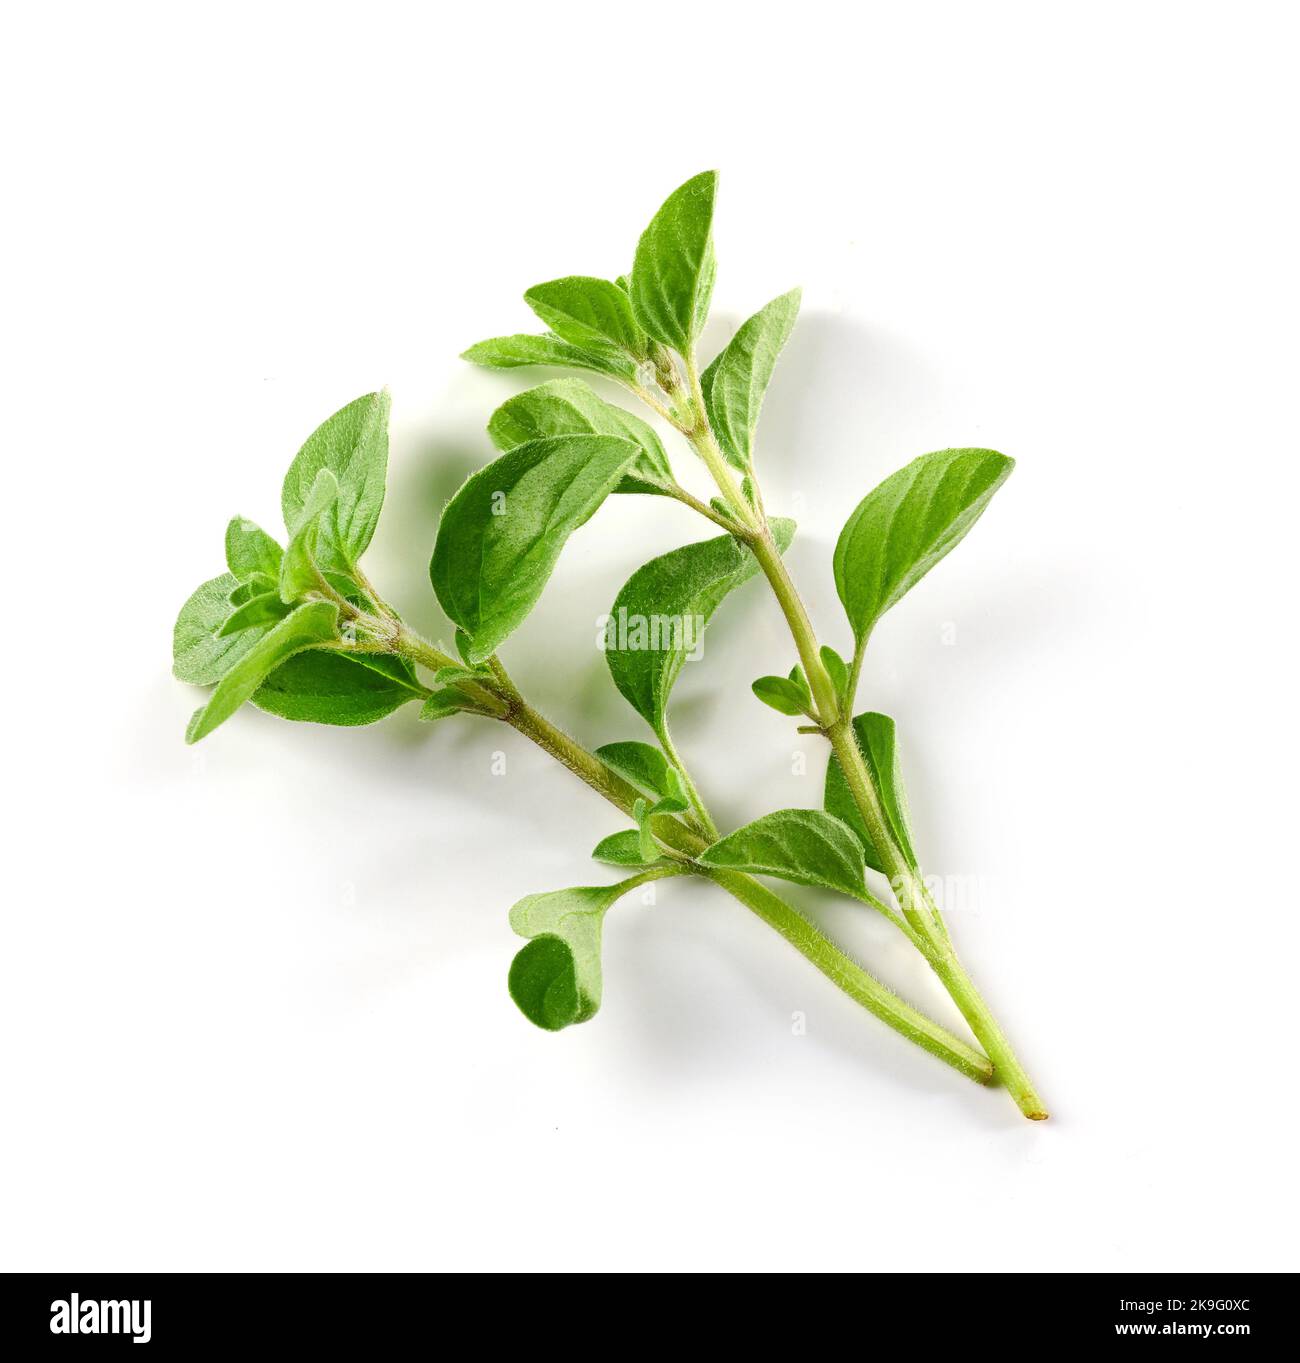 Photo de stock plante d'origan d'en-haut, isolée sur blanc 27435595